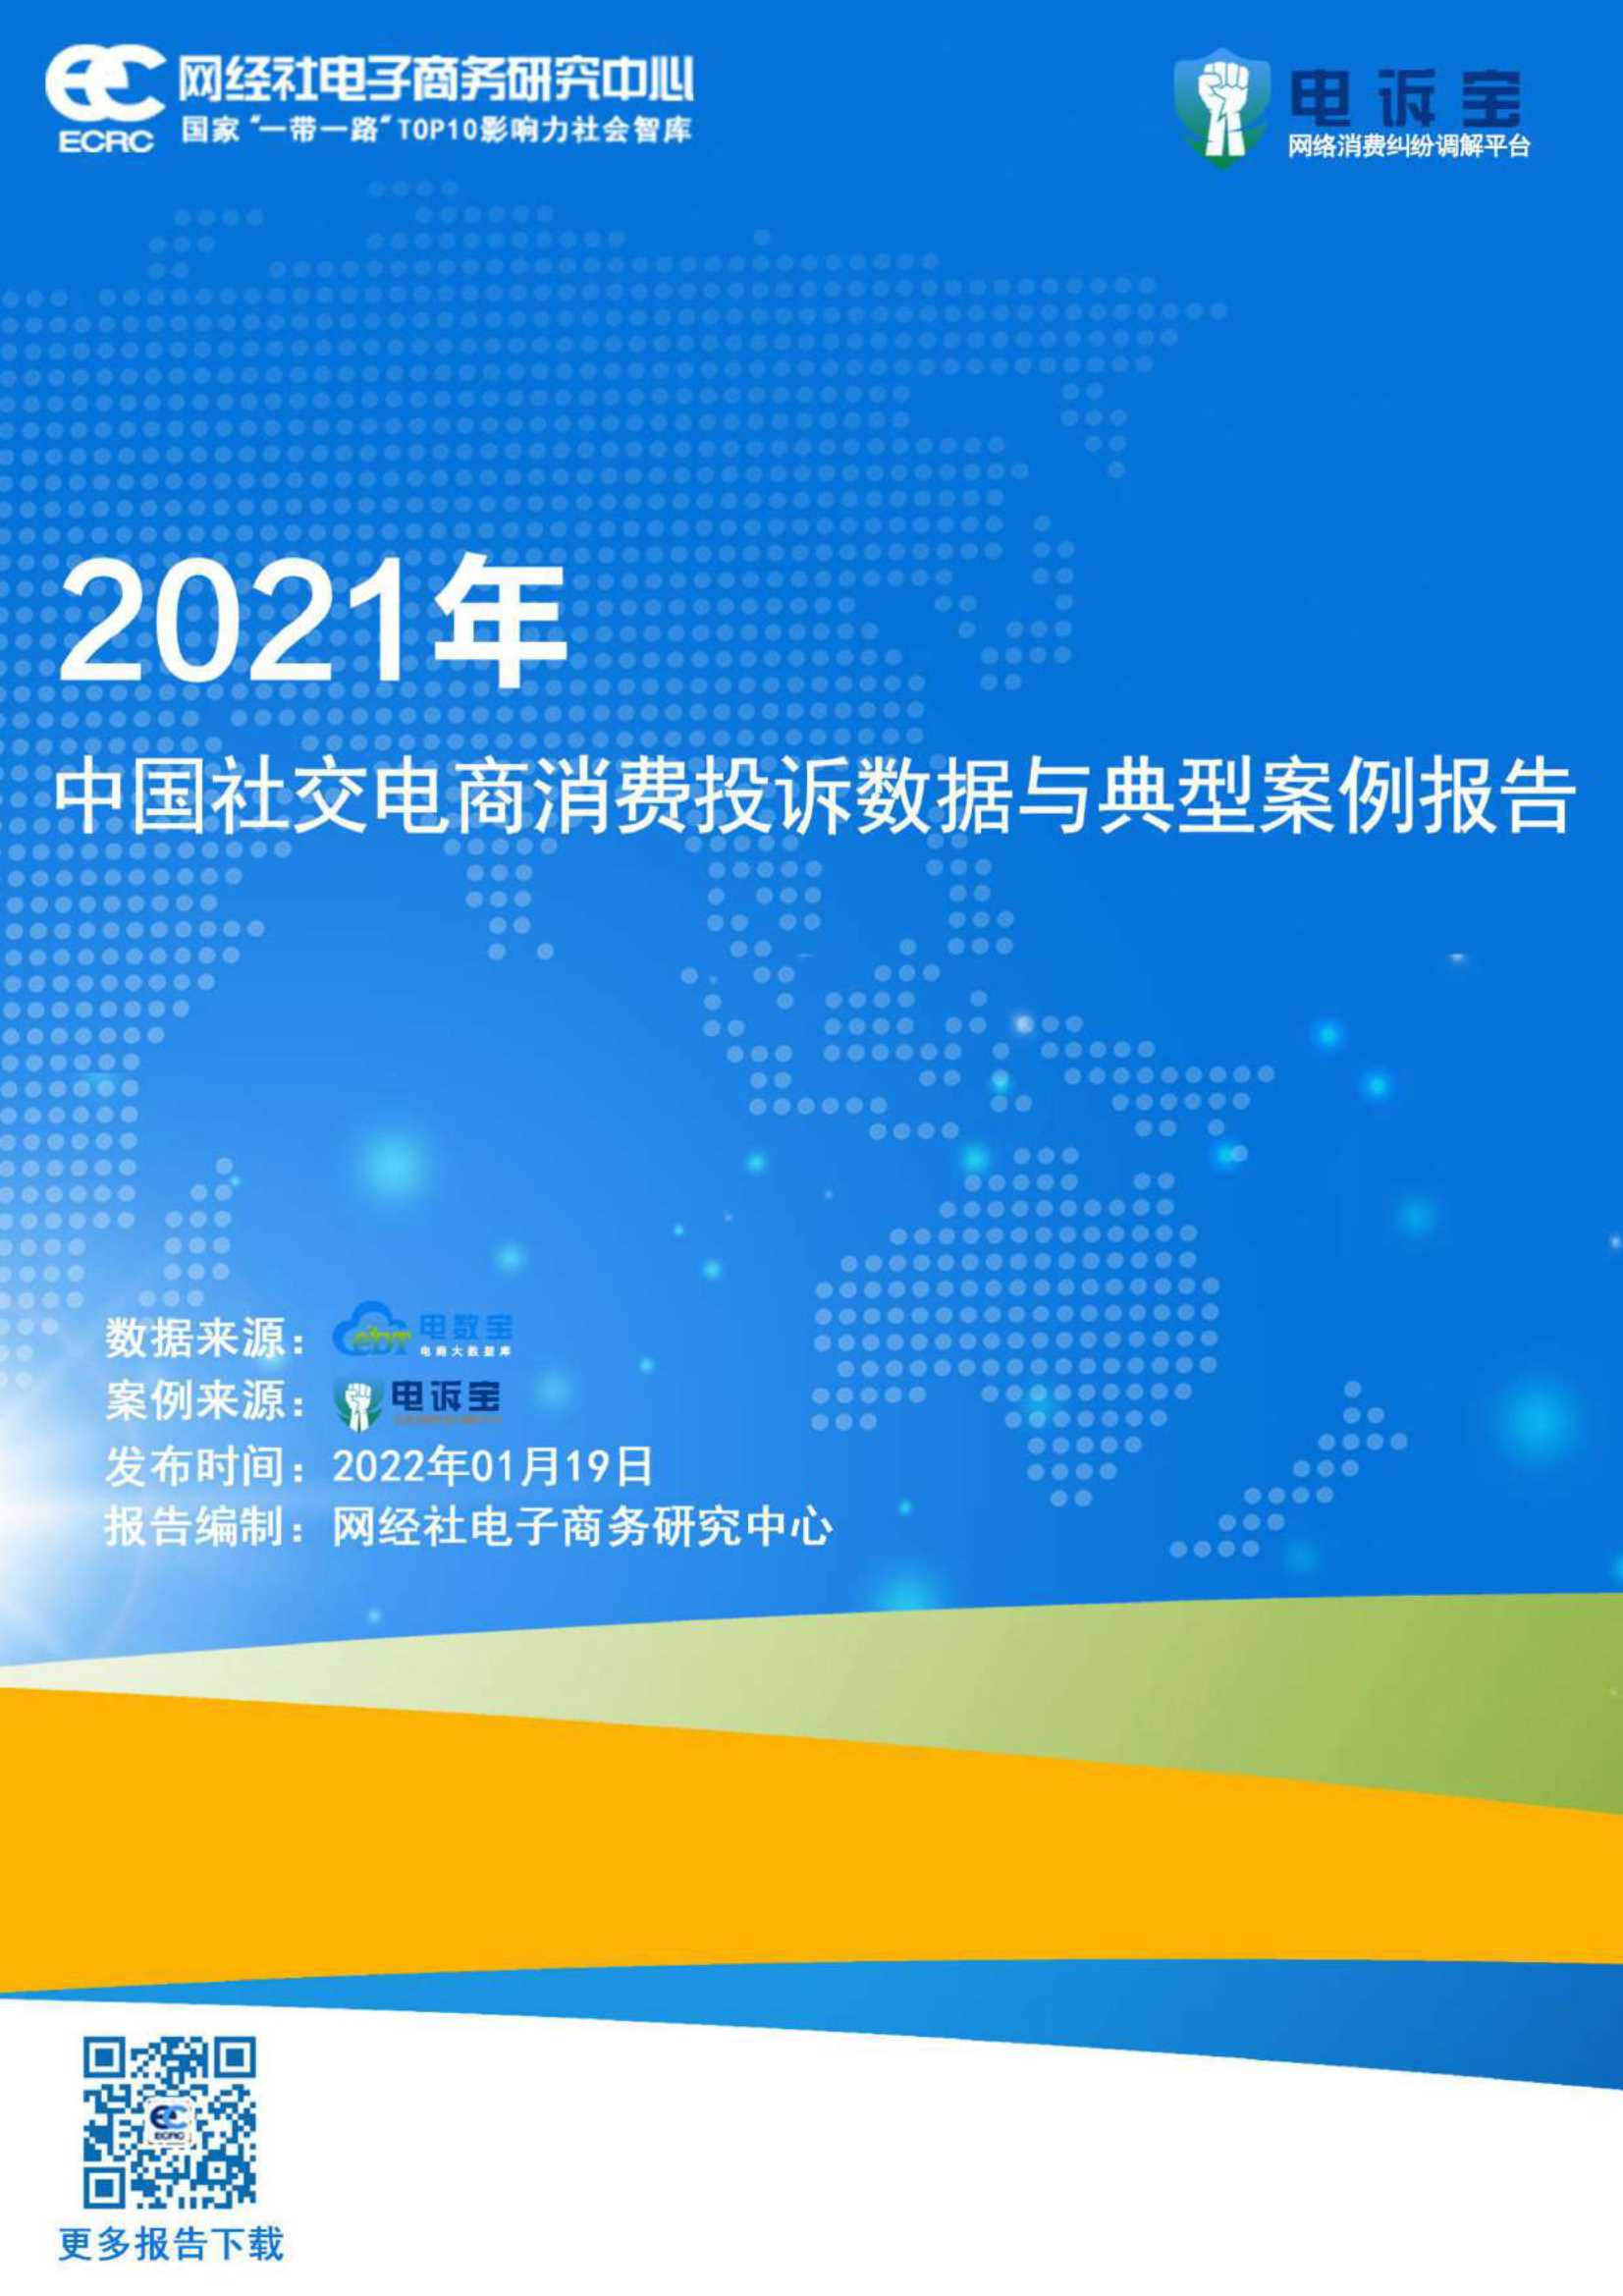 网经社-2021年度中国社交电商消费投诉数据与典型案例报告-2022.01-20页